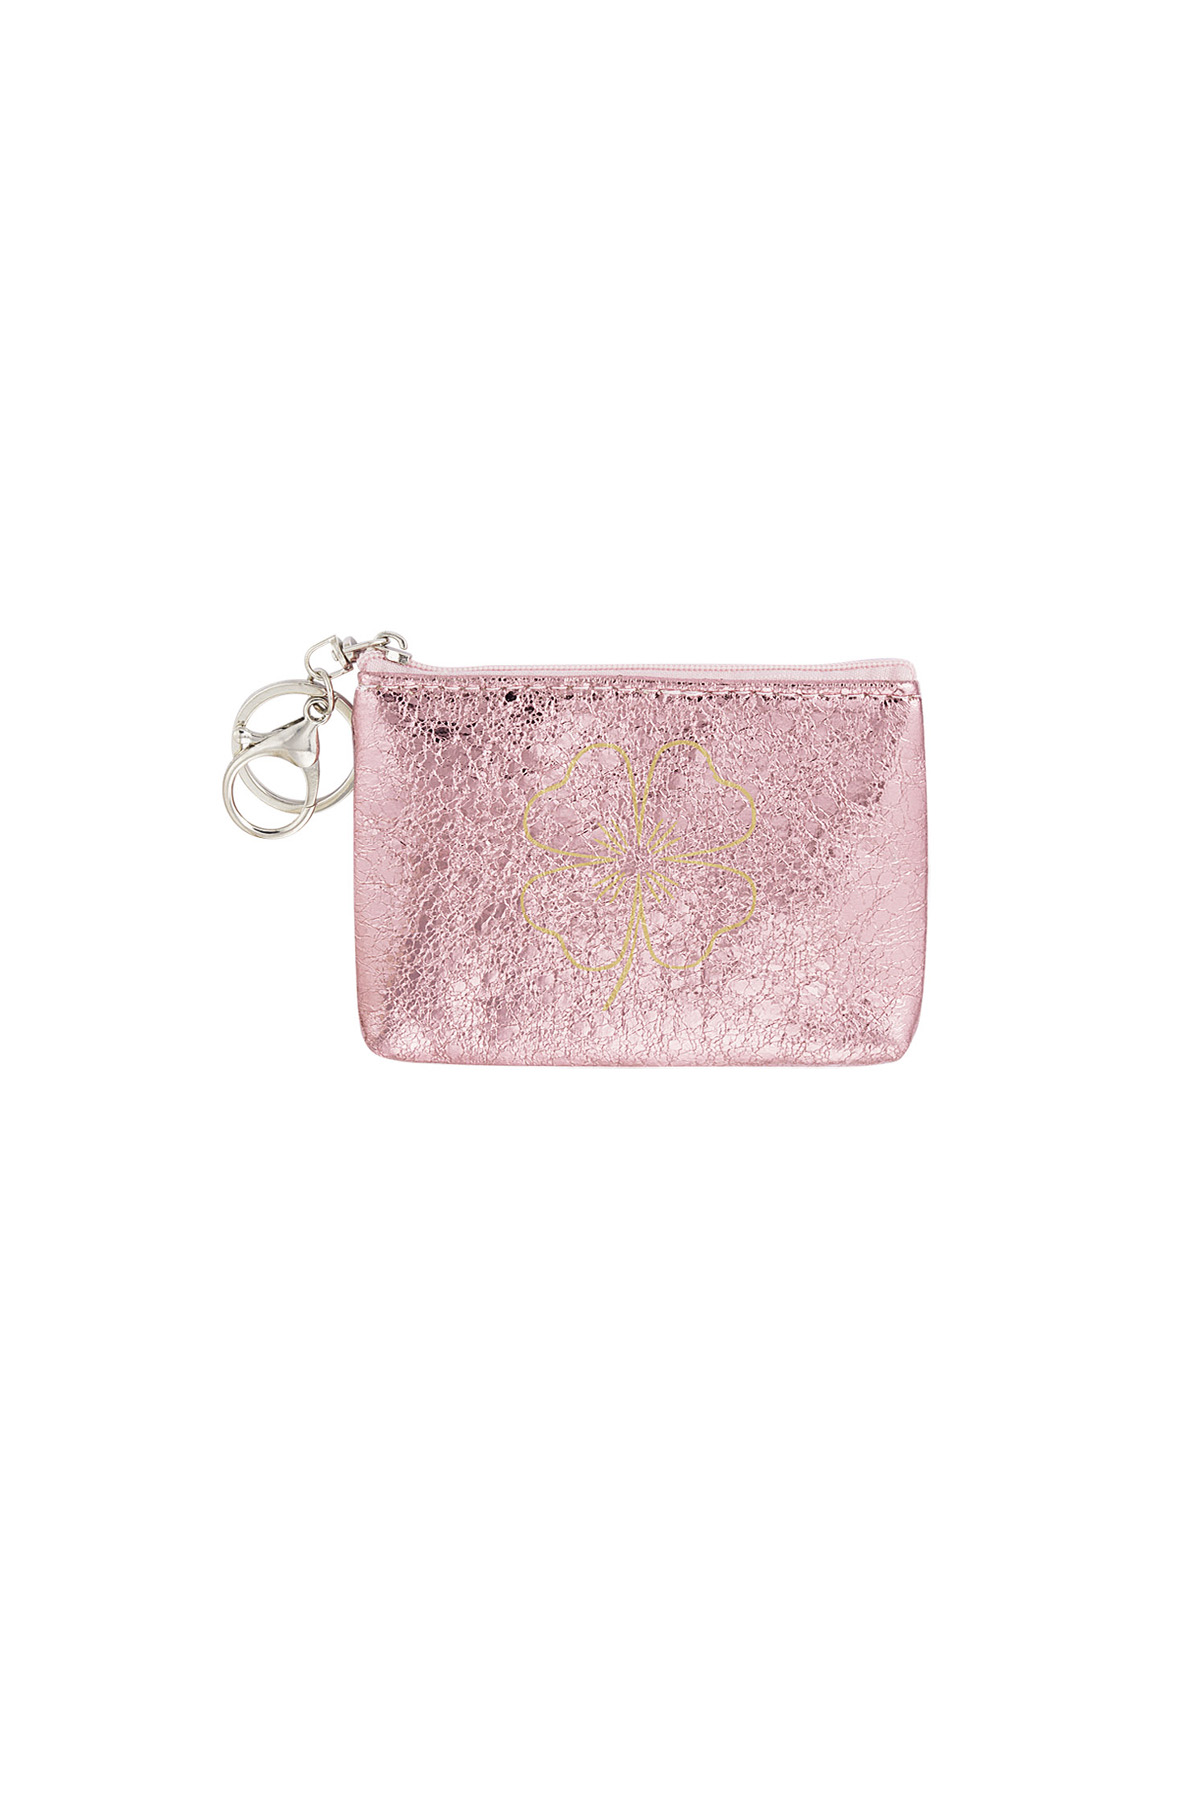 Keychain wallet metallic clover - pink